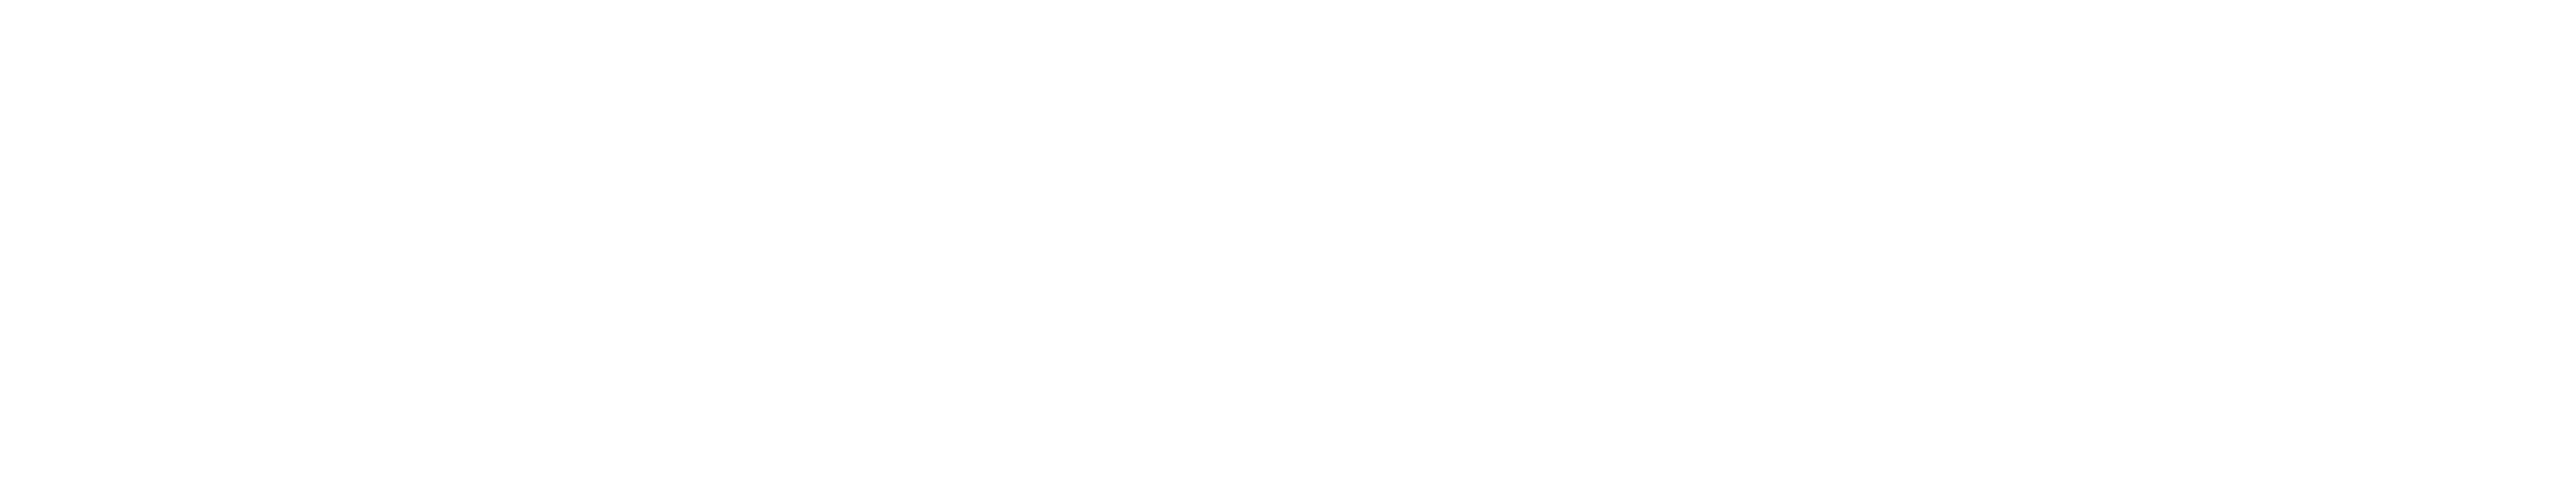 NacoTaco